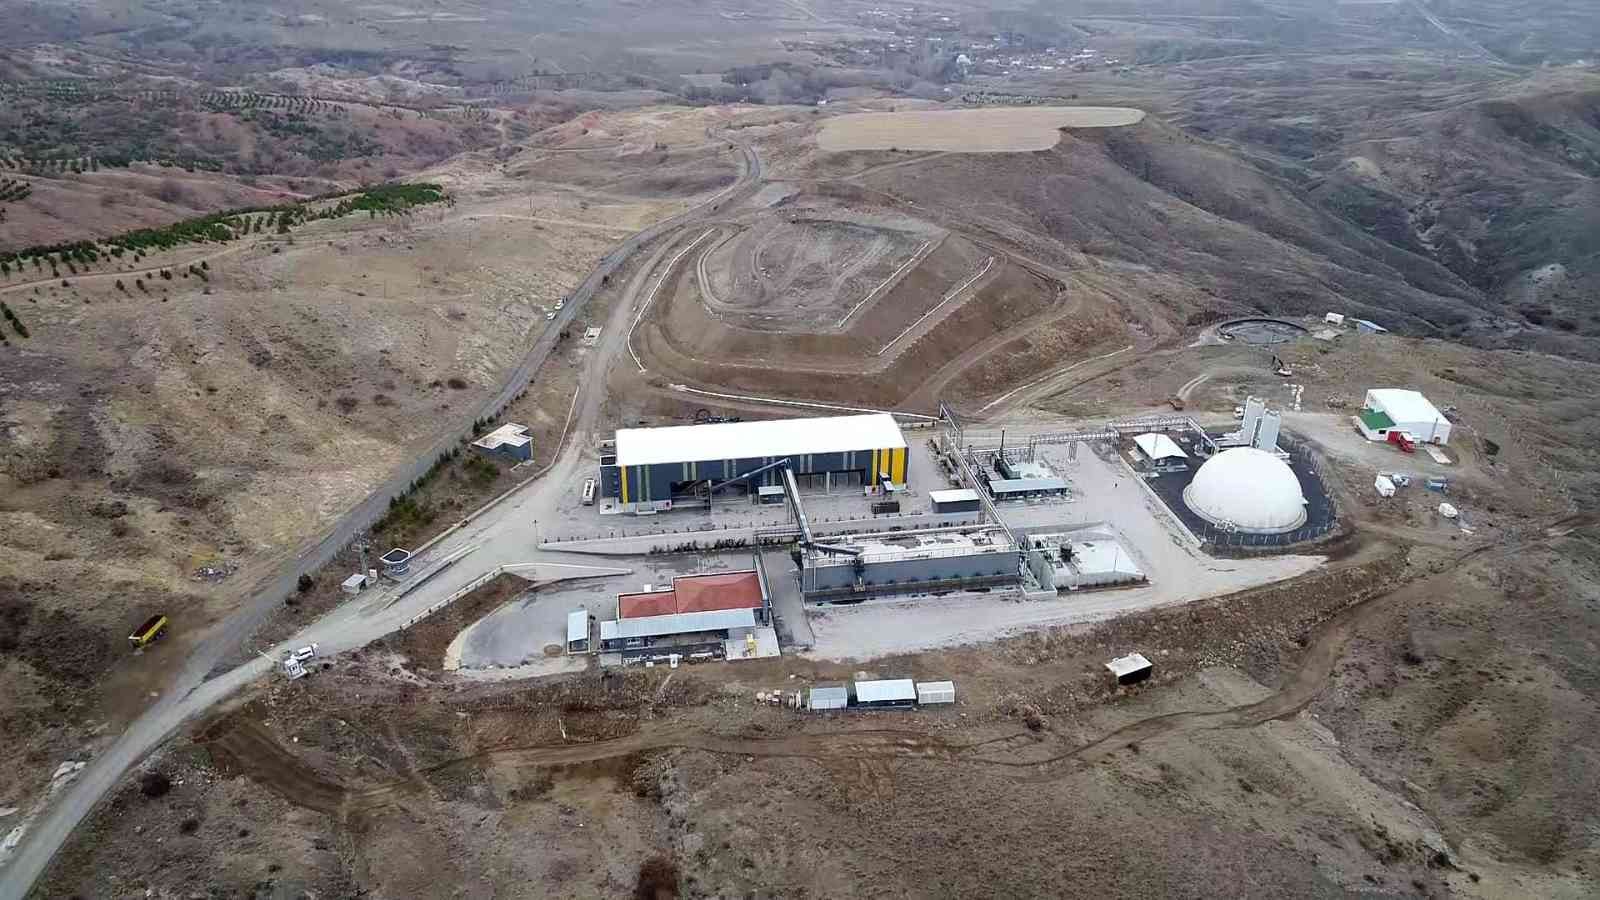 Yozgat’ta günlük 170 ton atık geri dönüşümle ekonomiye kazandırılıyor #yozgat